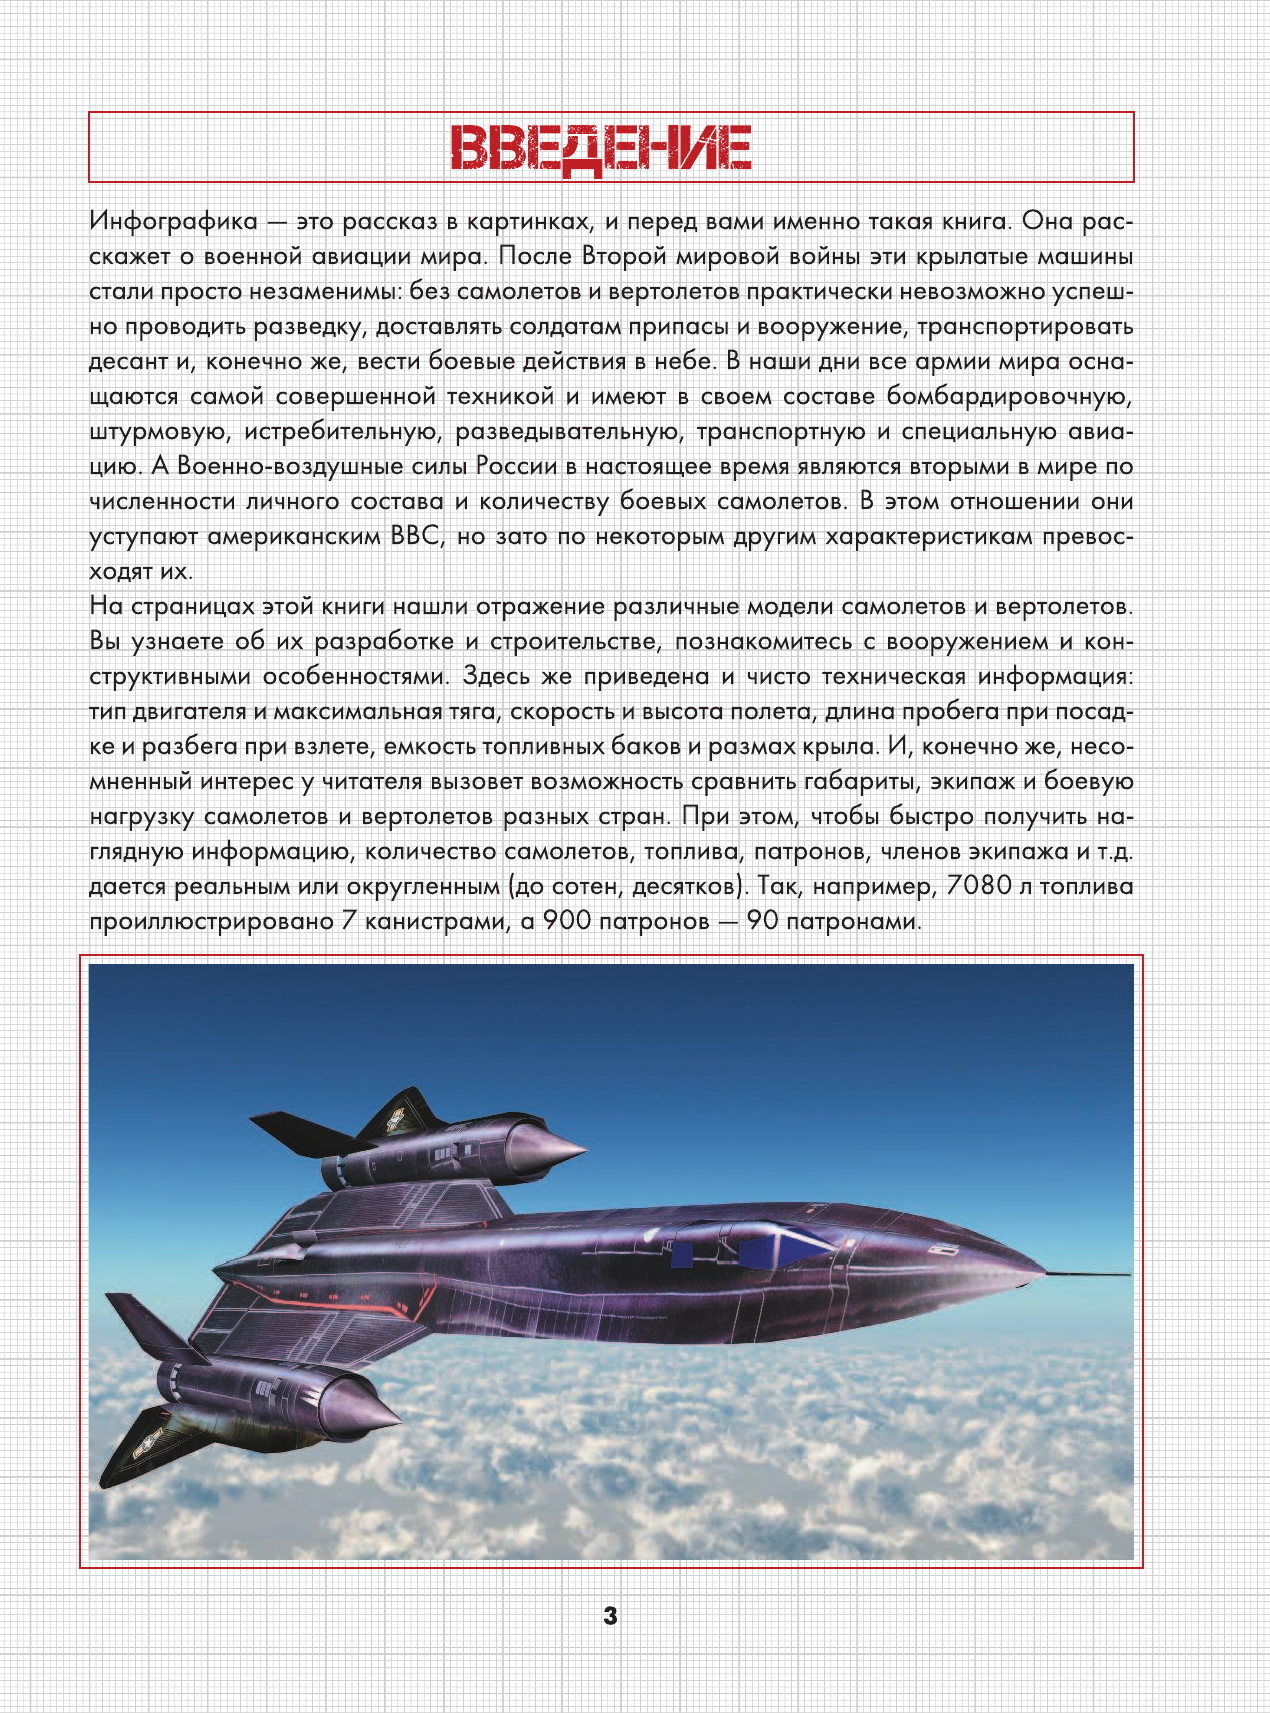 Мерников Андрей Геннадьевич Самолеты мира - страница 4